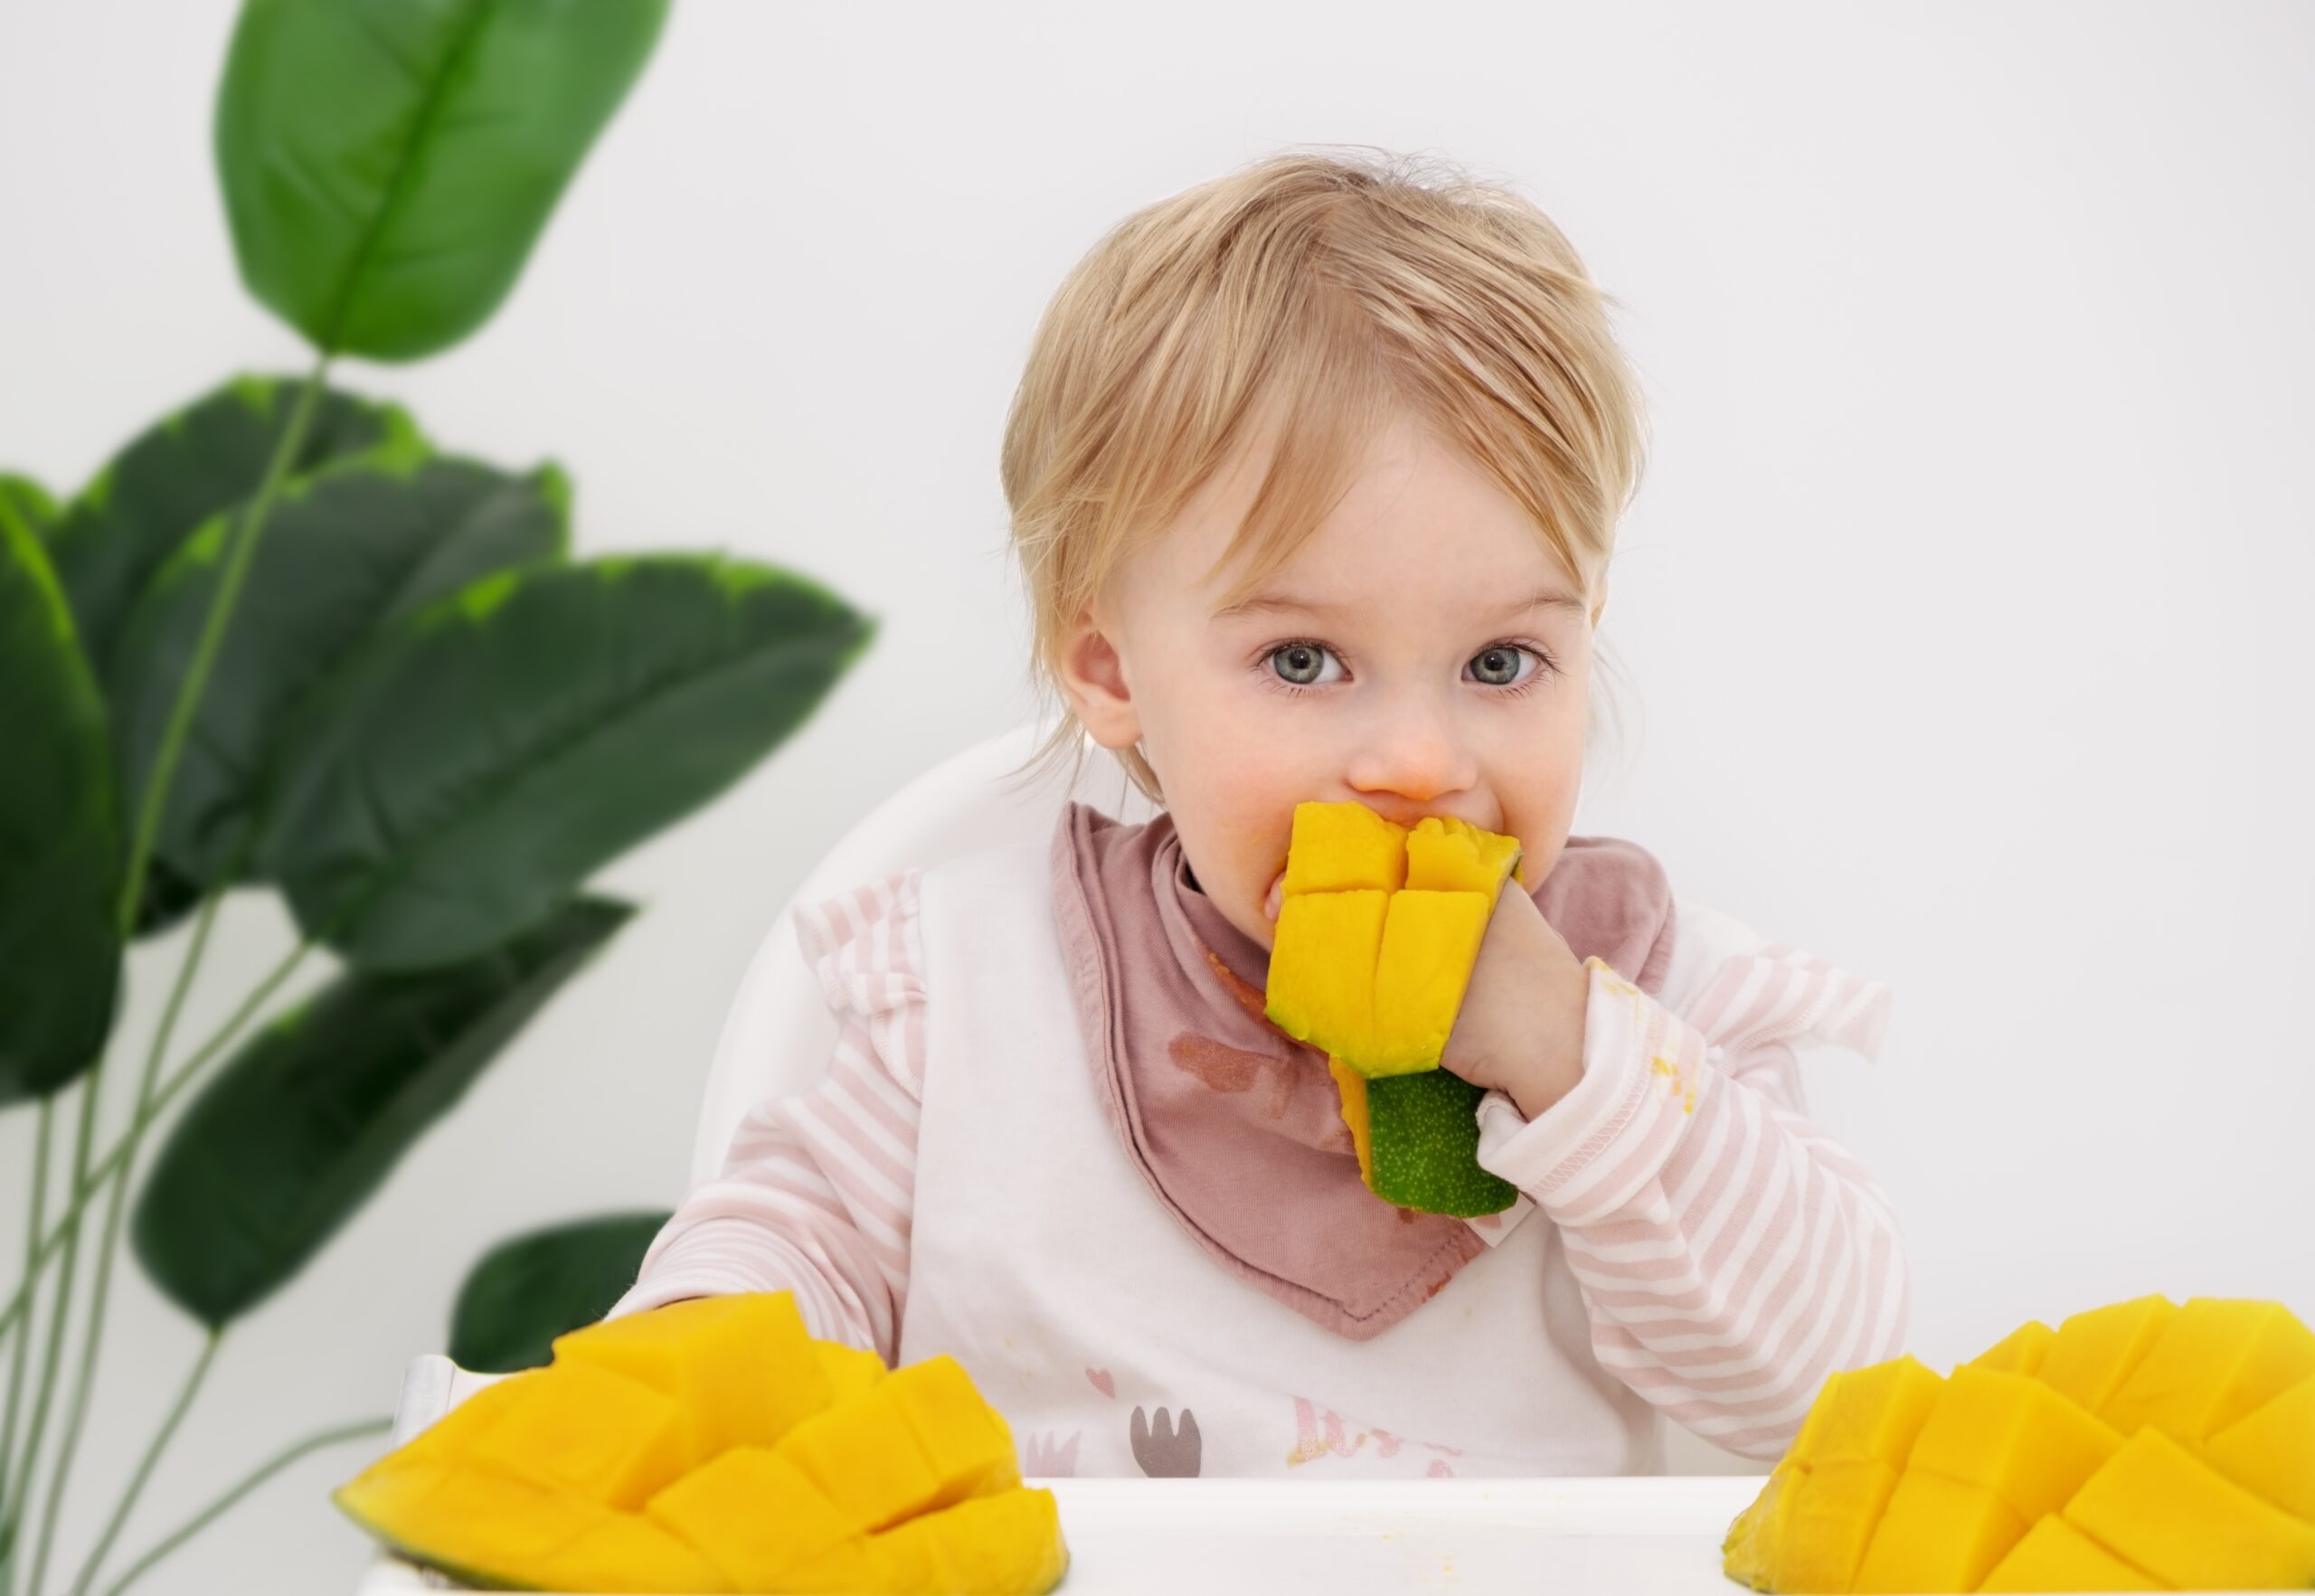 baby eating mango 2022 10 31 03 22 39 utc 1 scaled